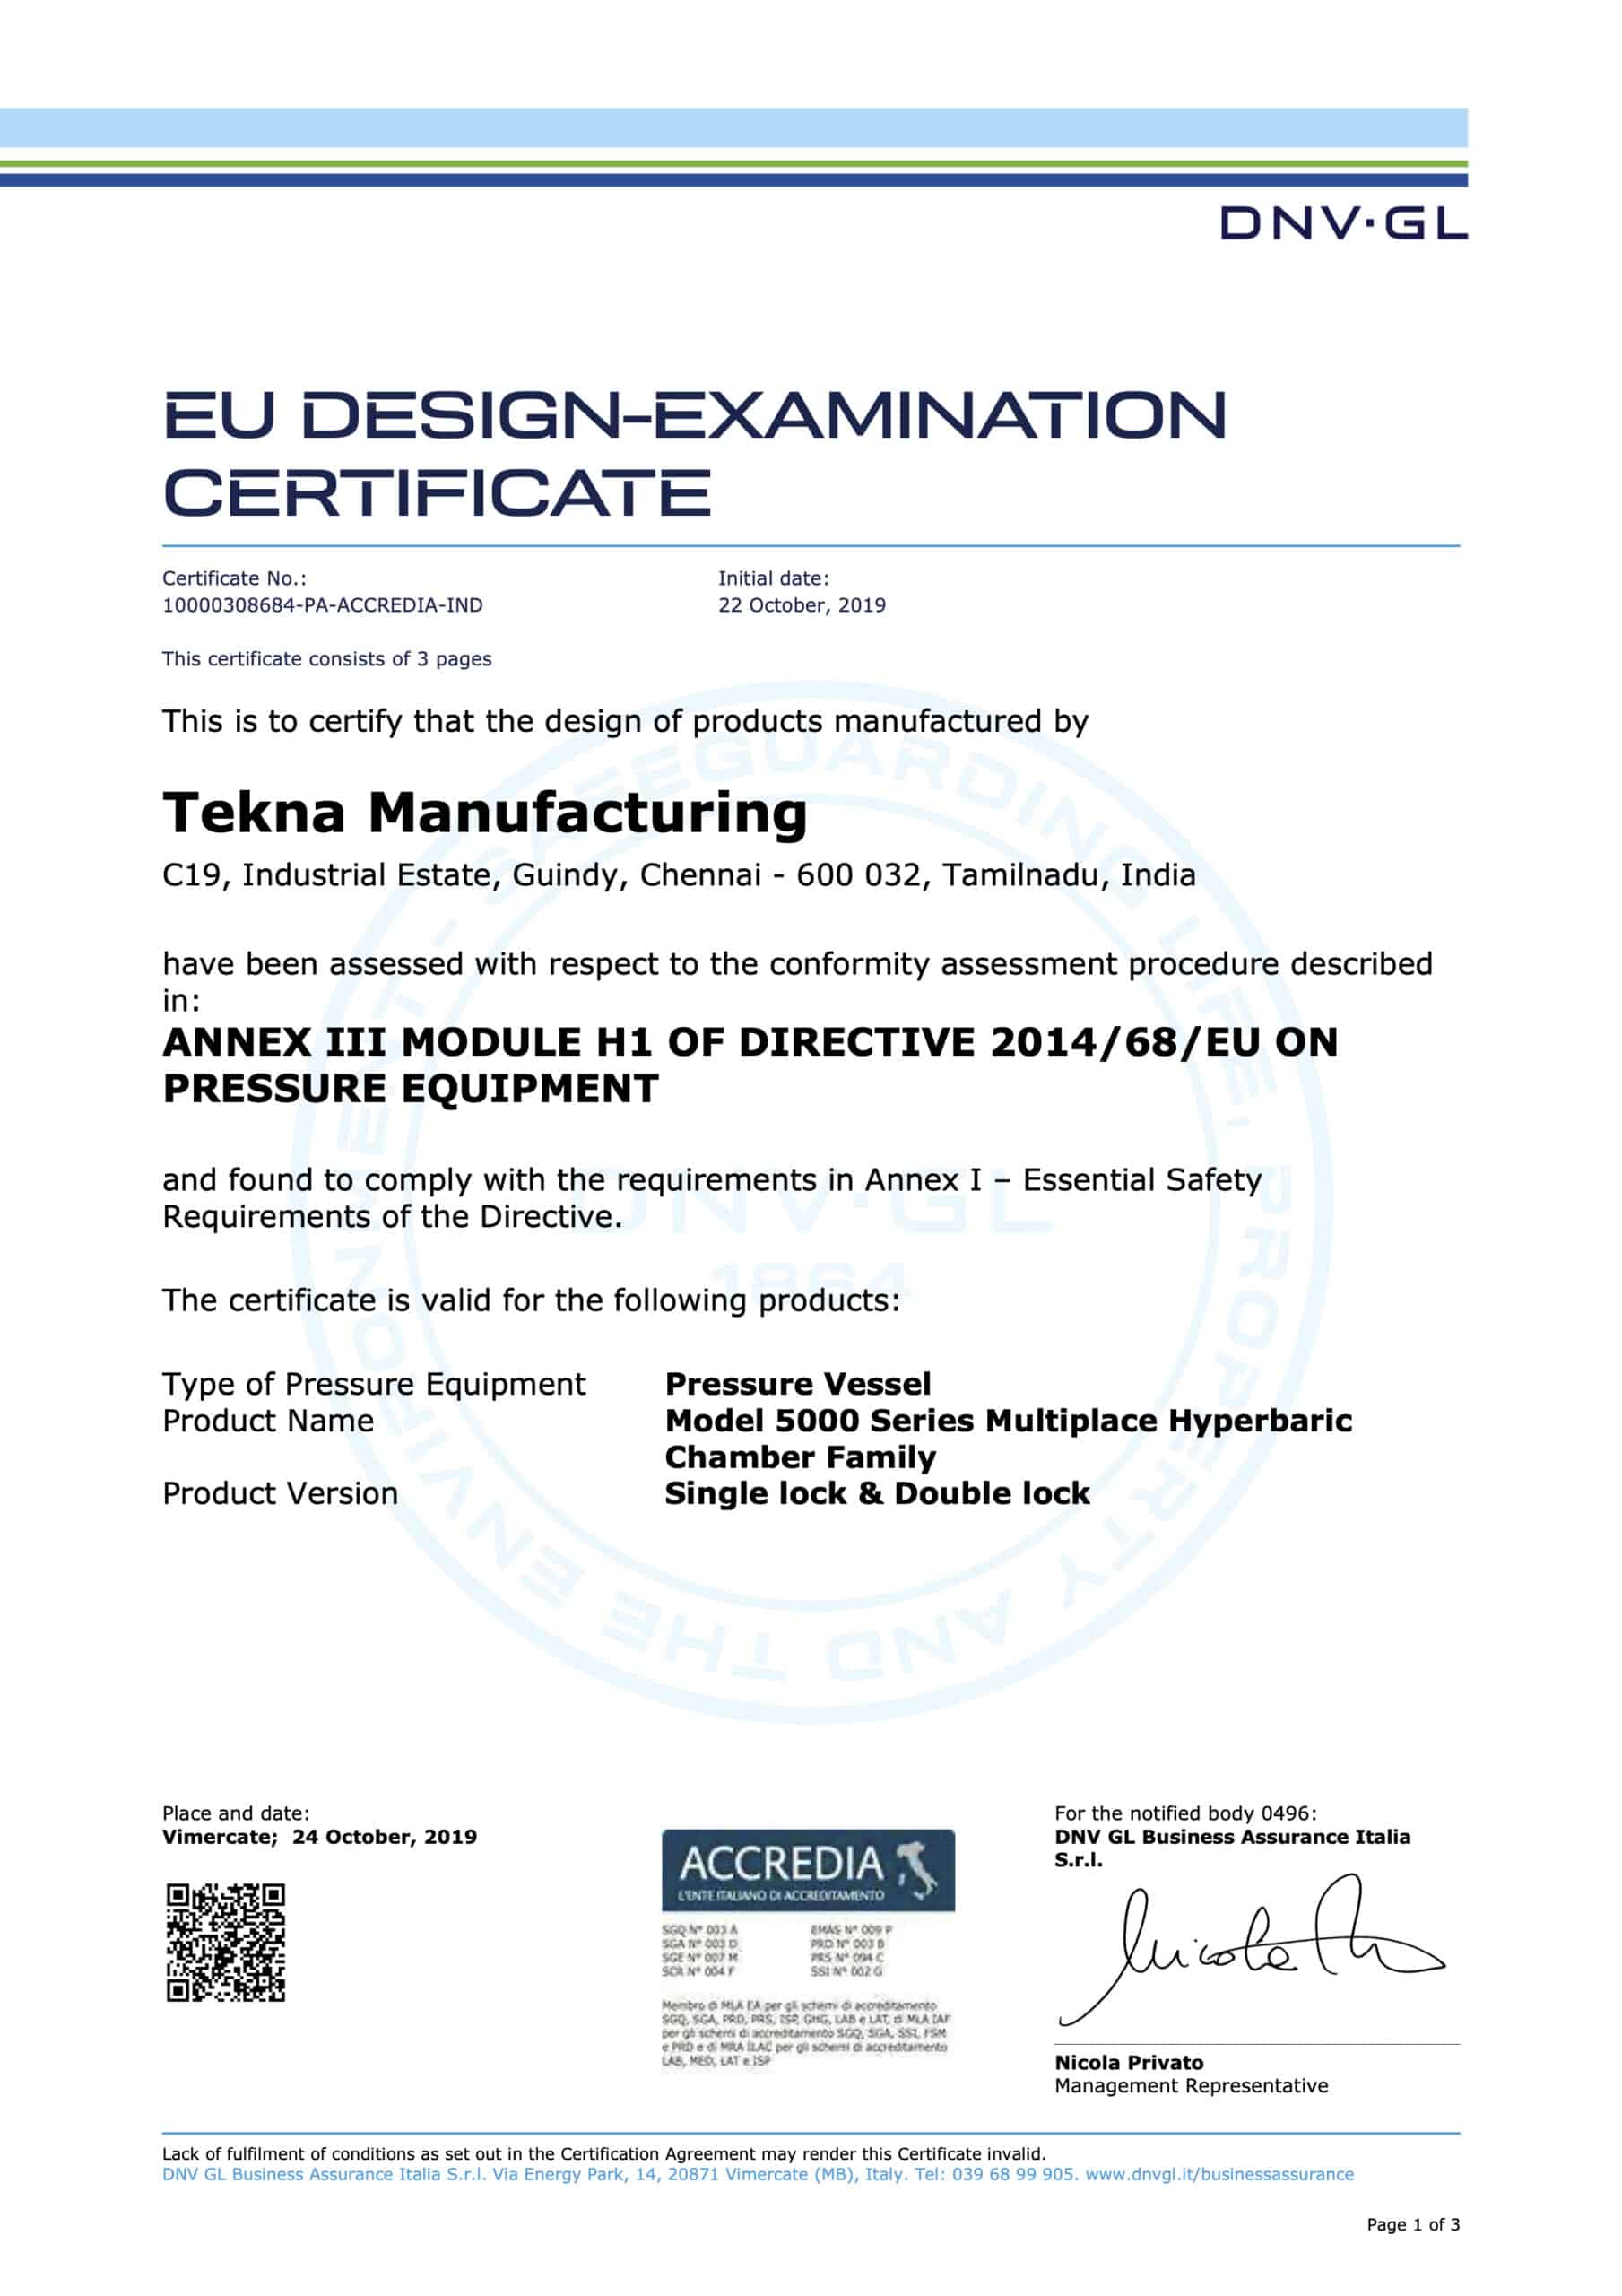 PED Design Examination - 5000 Series